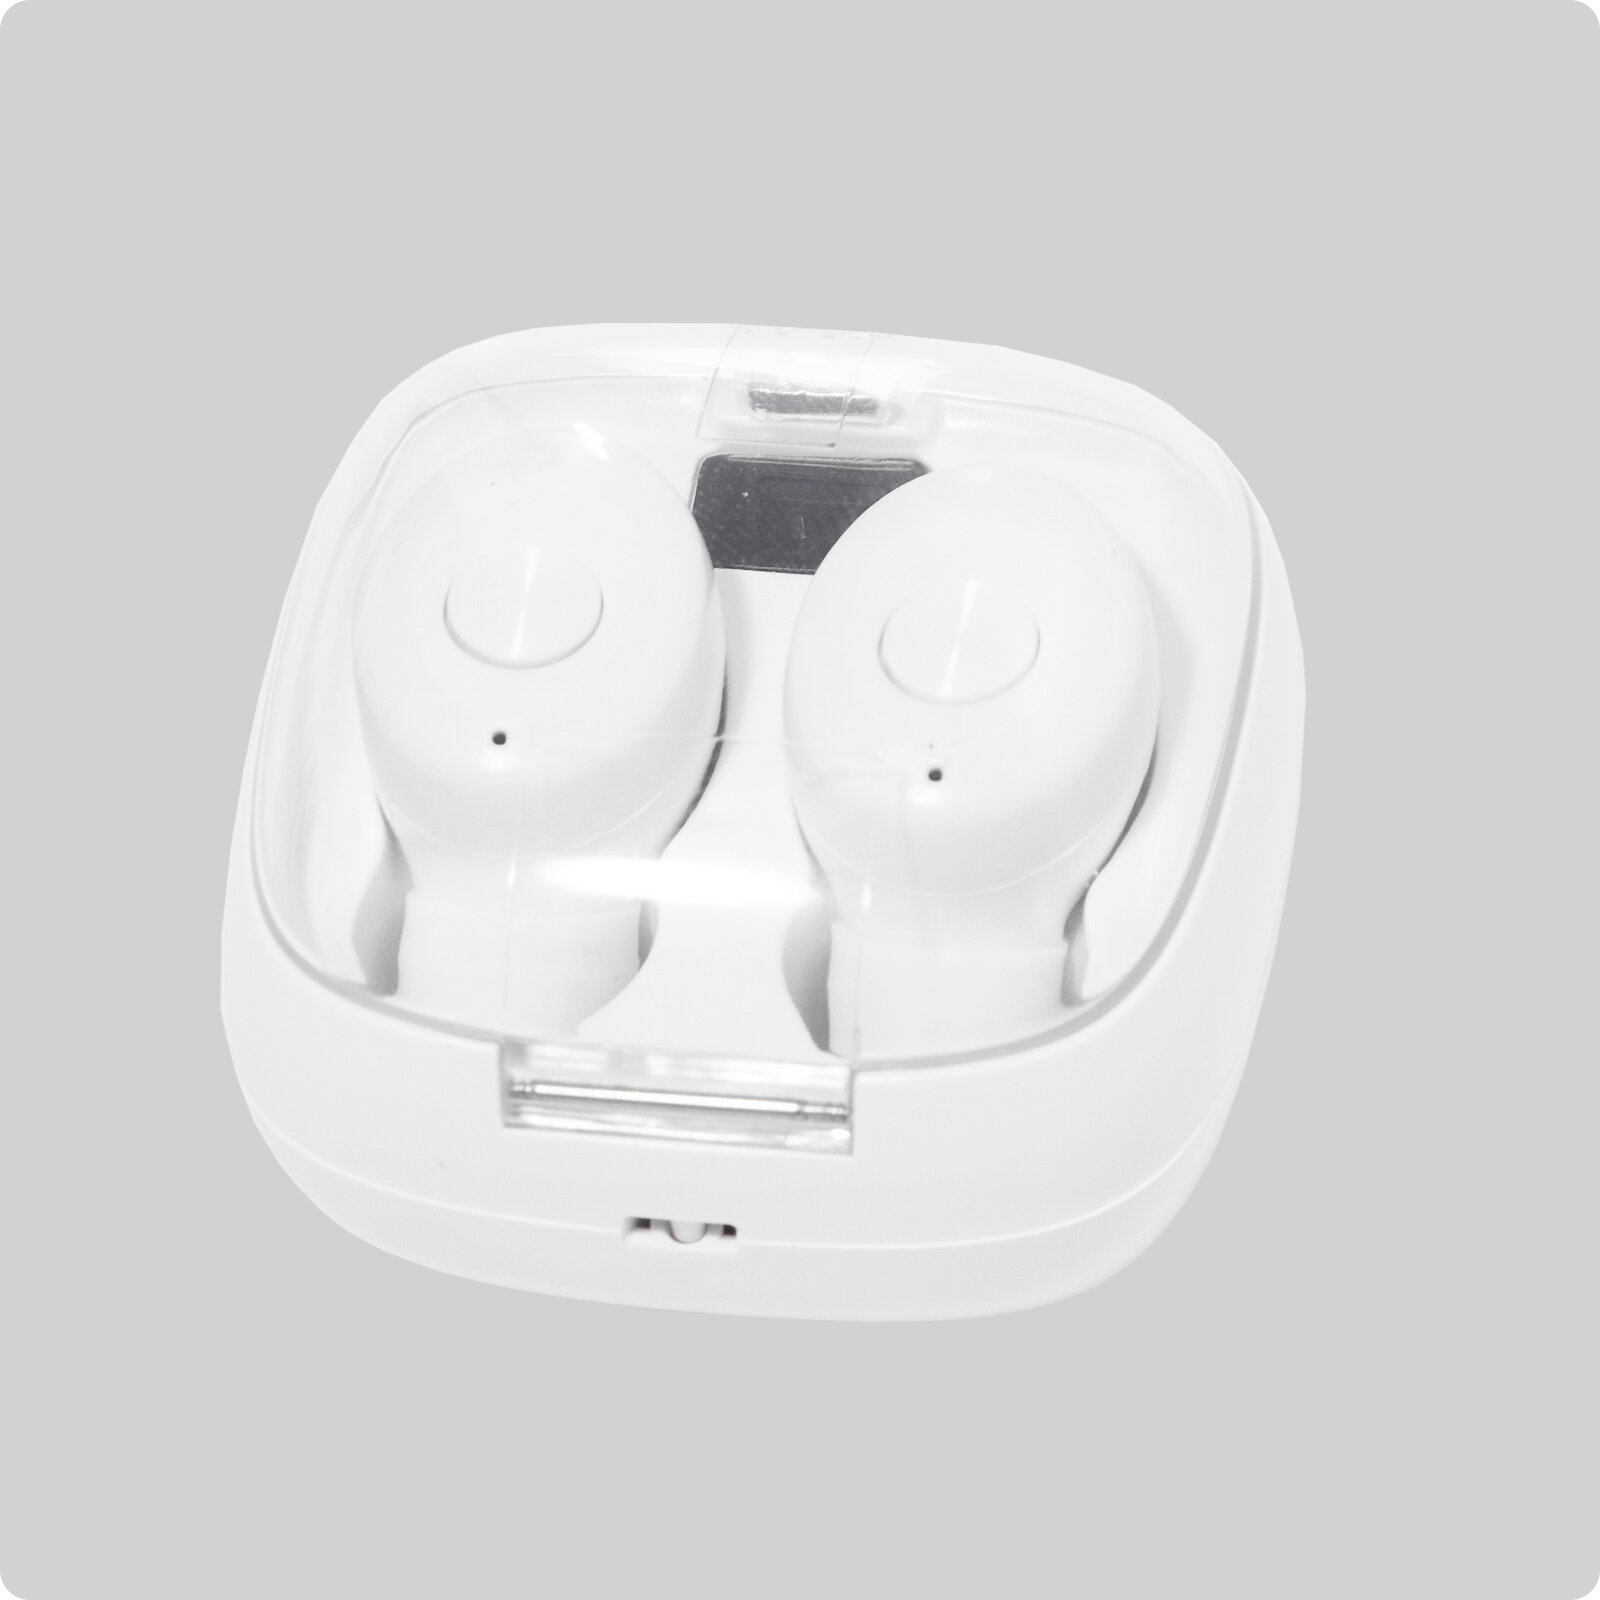 Беспроводные вакуумные наушники (белые) c Bluetooth спортивные игровые гарнитура с микрофоном и индикатором для телефона xiaomi, iphone, как JBL